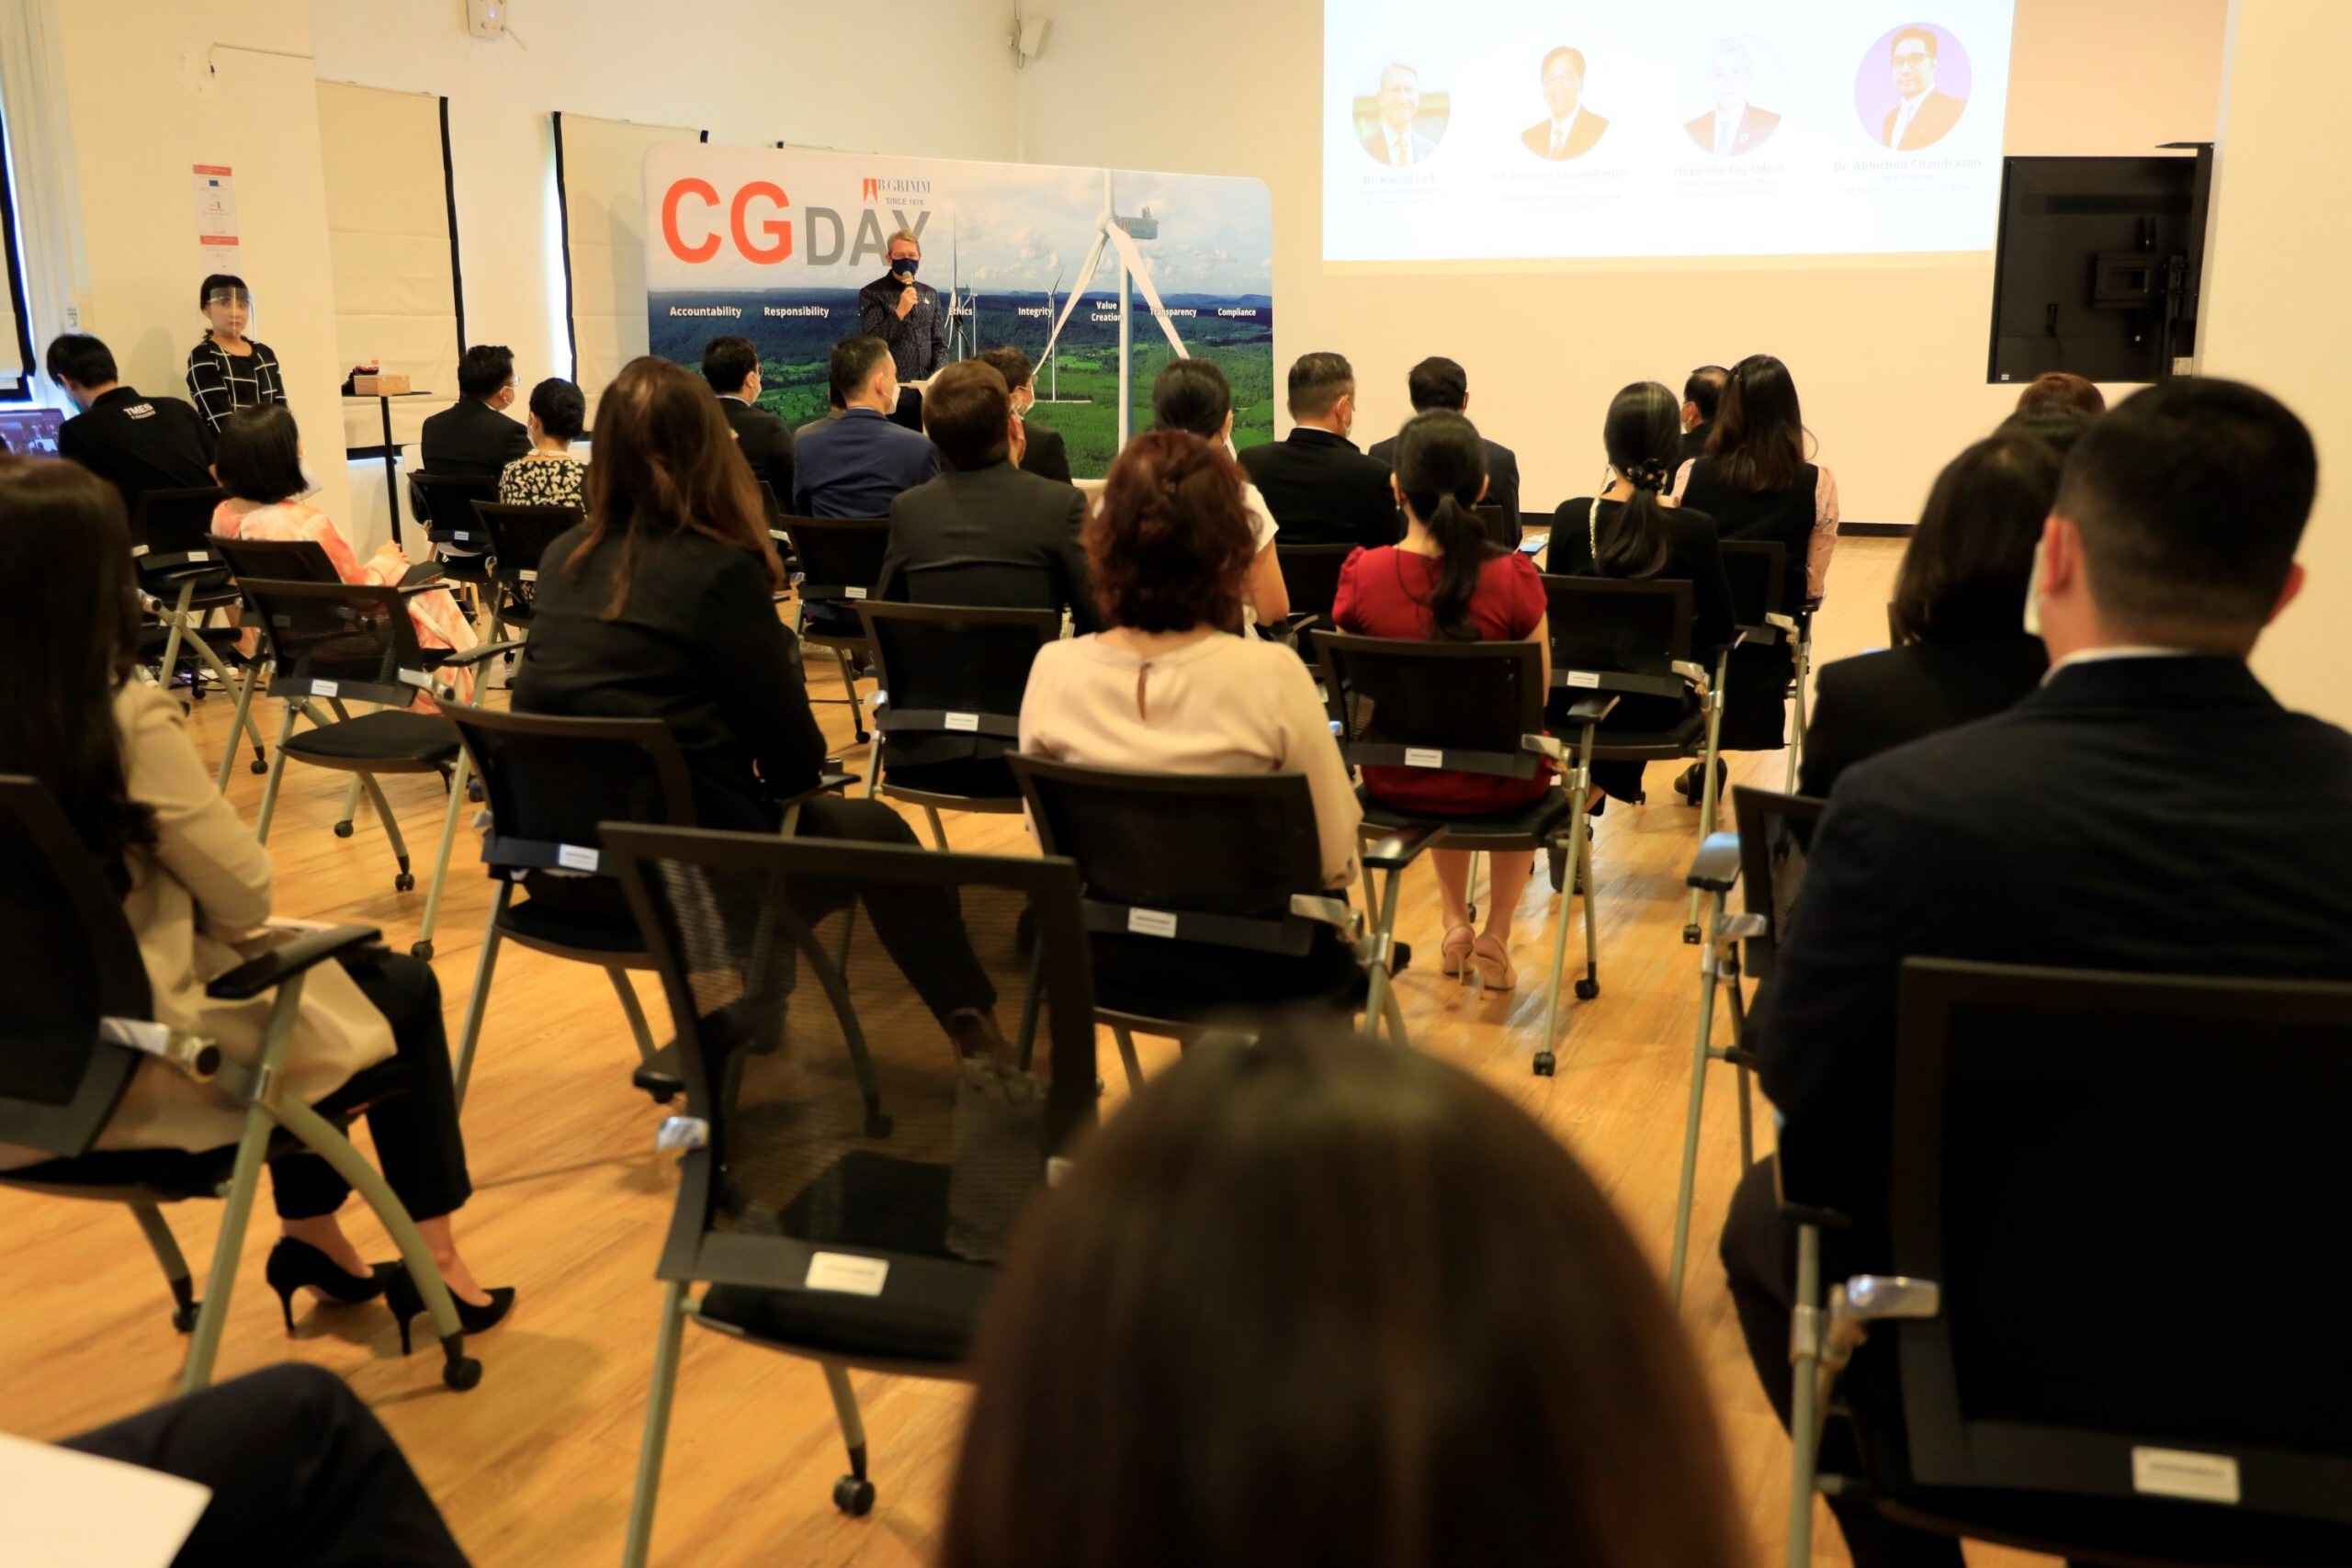 บี.กริม เพาเวอร์ จัดงาน CG Day 2021 ชูแนวคิด "การส่งเสริมการกำกับดูแลกิจการในการดำเนินธุรกิจด้วยความโอบอ้อมอารี"